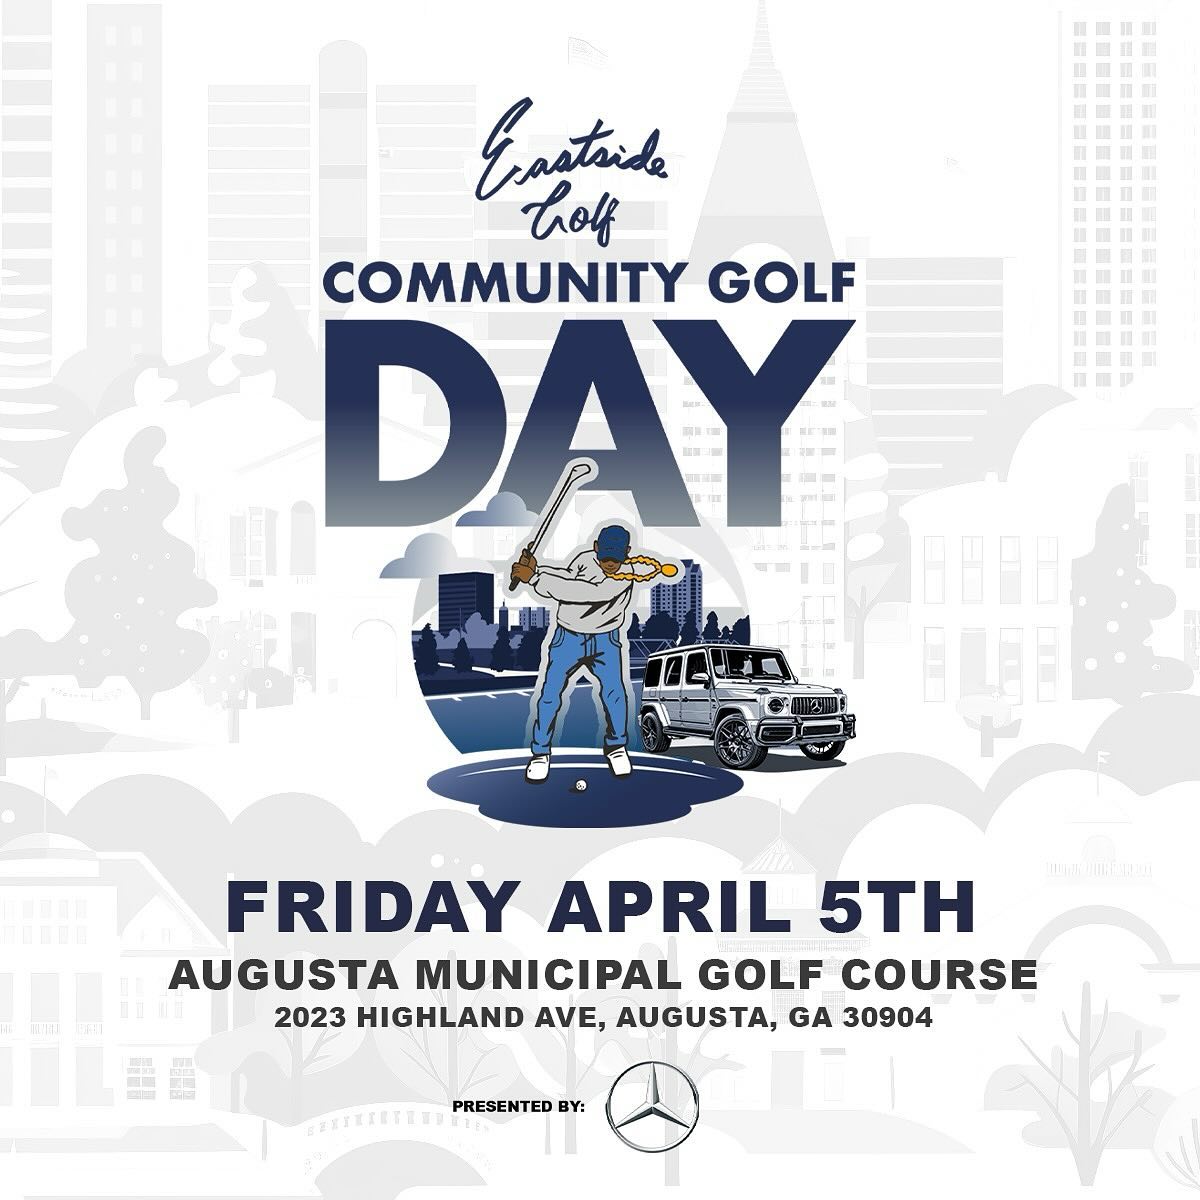 Community Golf Day